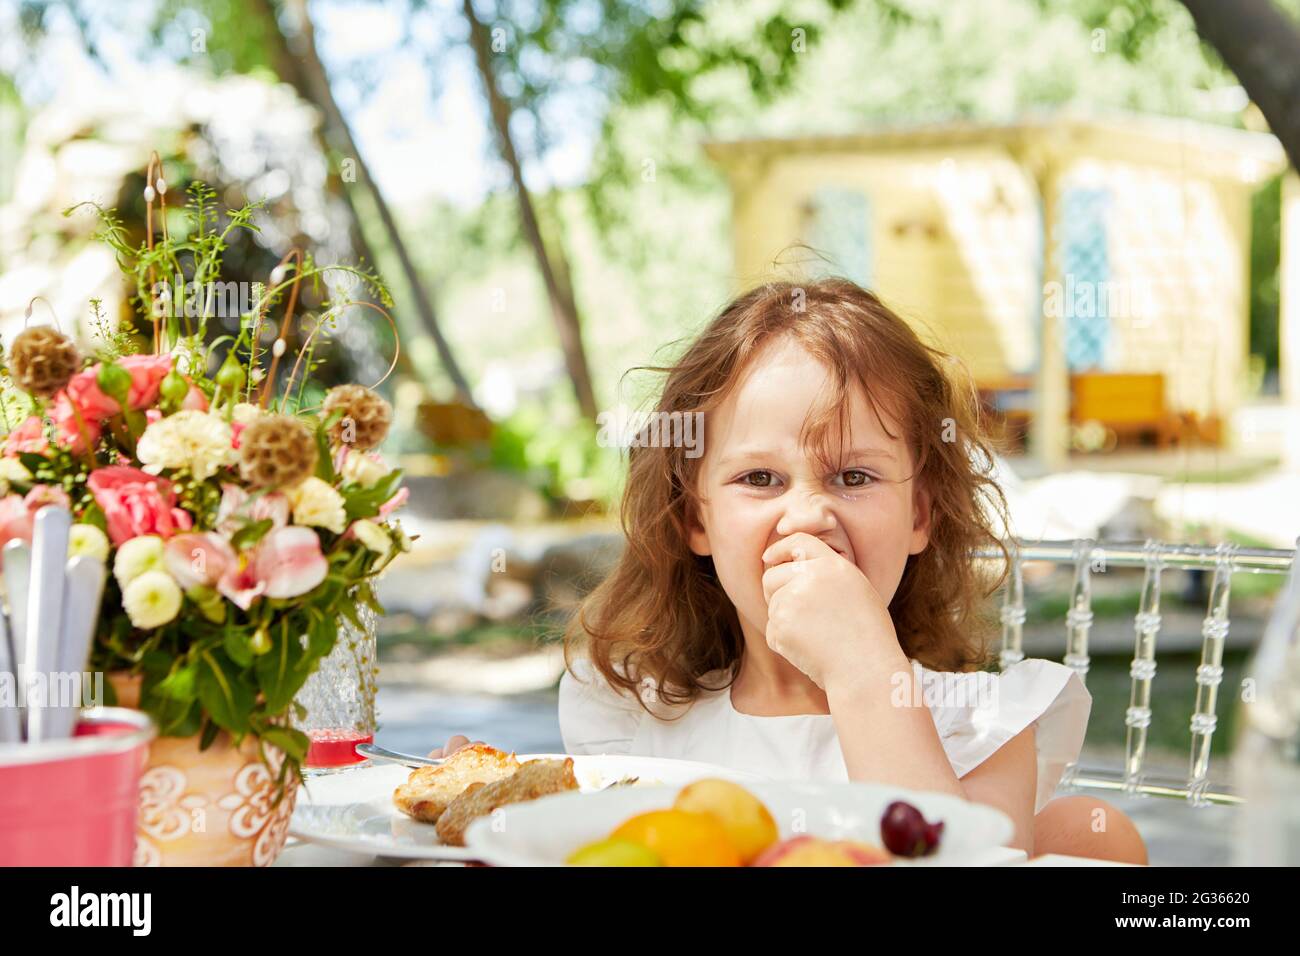 Nettes kleines Kind, das leckeres Essen isst, während es am Tisch im Hinterhof sitzt und die Kamera anschaut Stockfoto